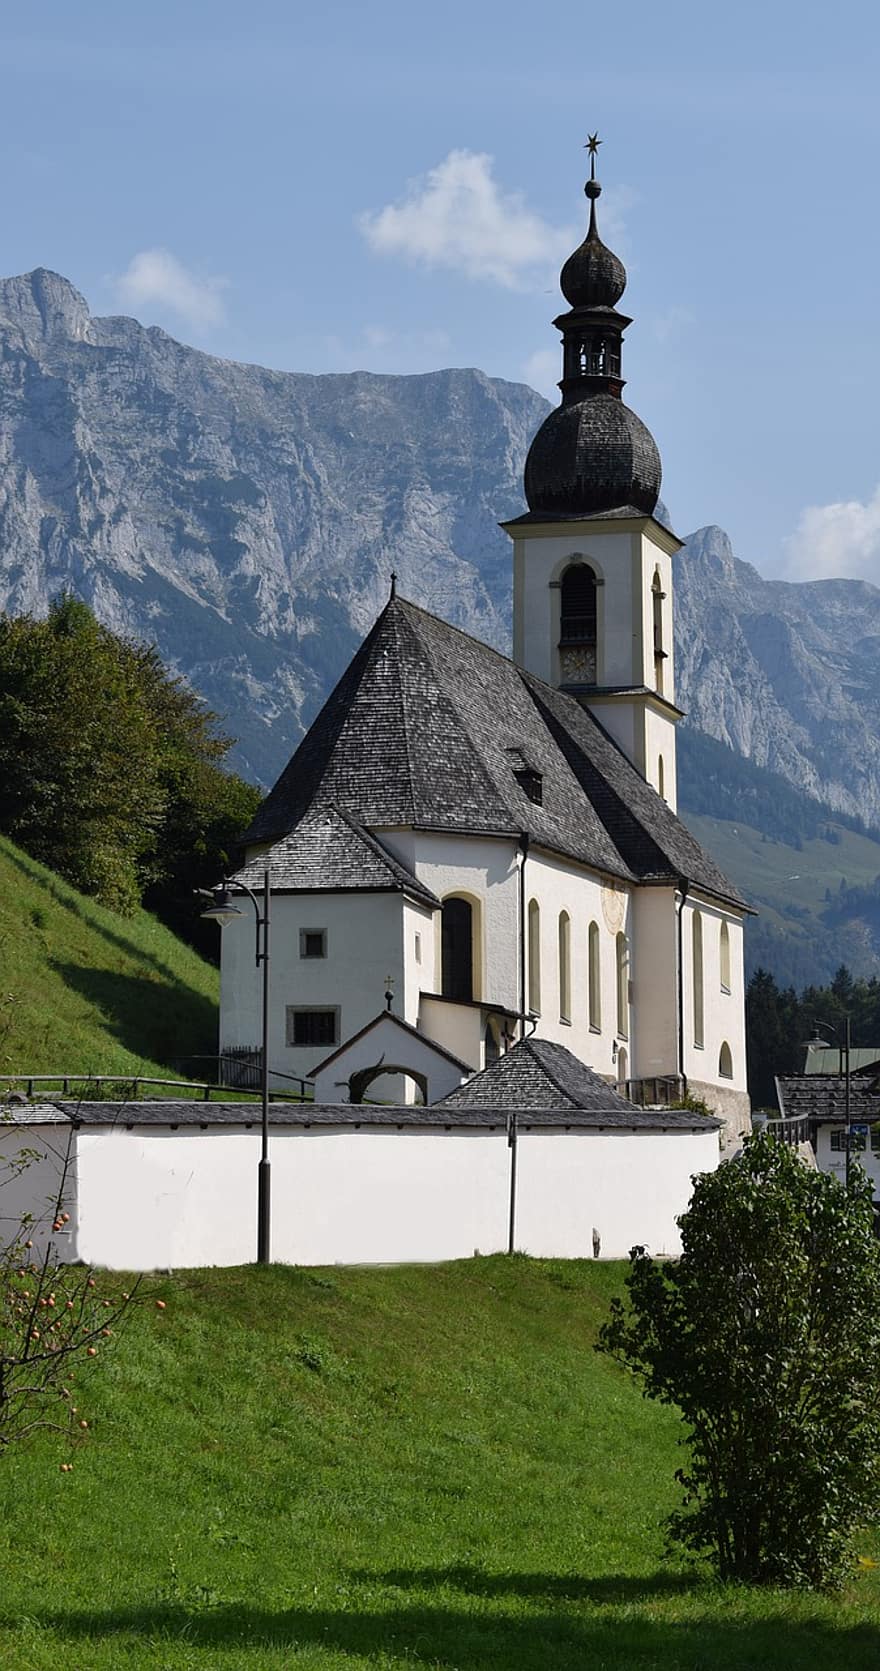 baznīca, kapela, arhitektūra, ēka, zvanu tornis, struktūru, fasāde, Sakrālā arhitektūra, berchtesgaden, Vācija, bavārija